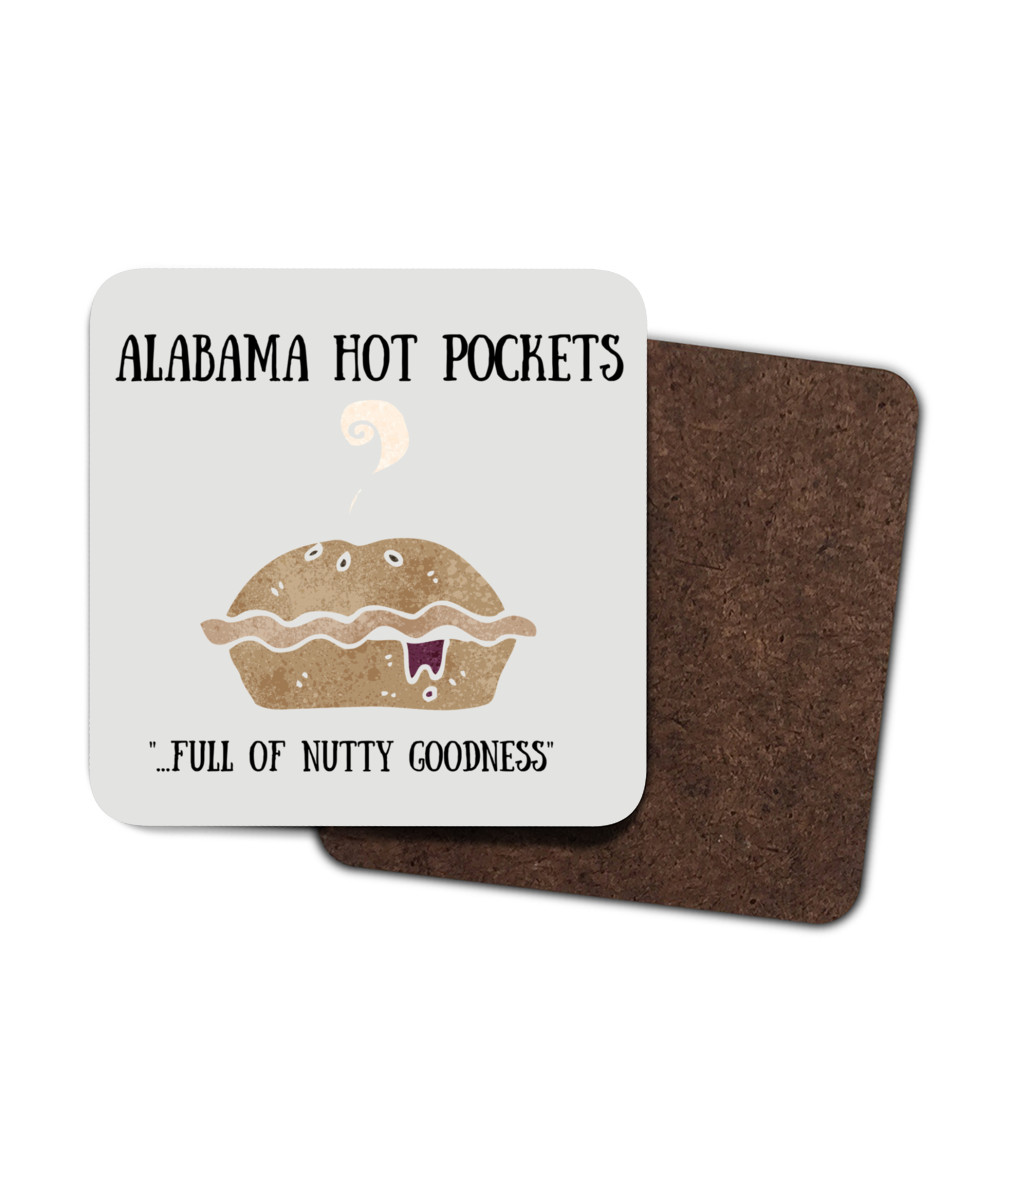 Alabama hot pocket picture